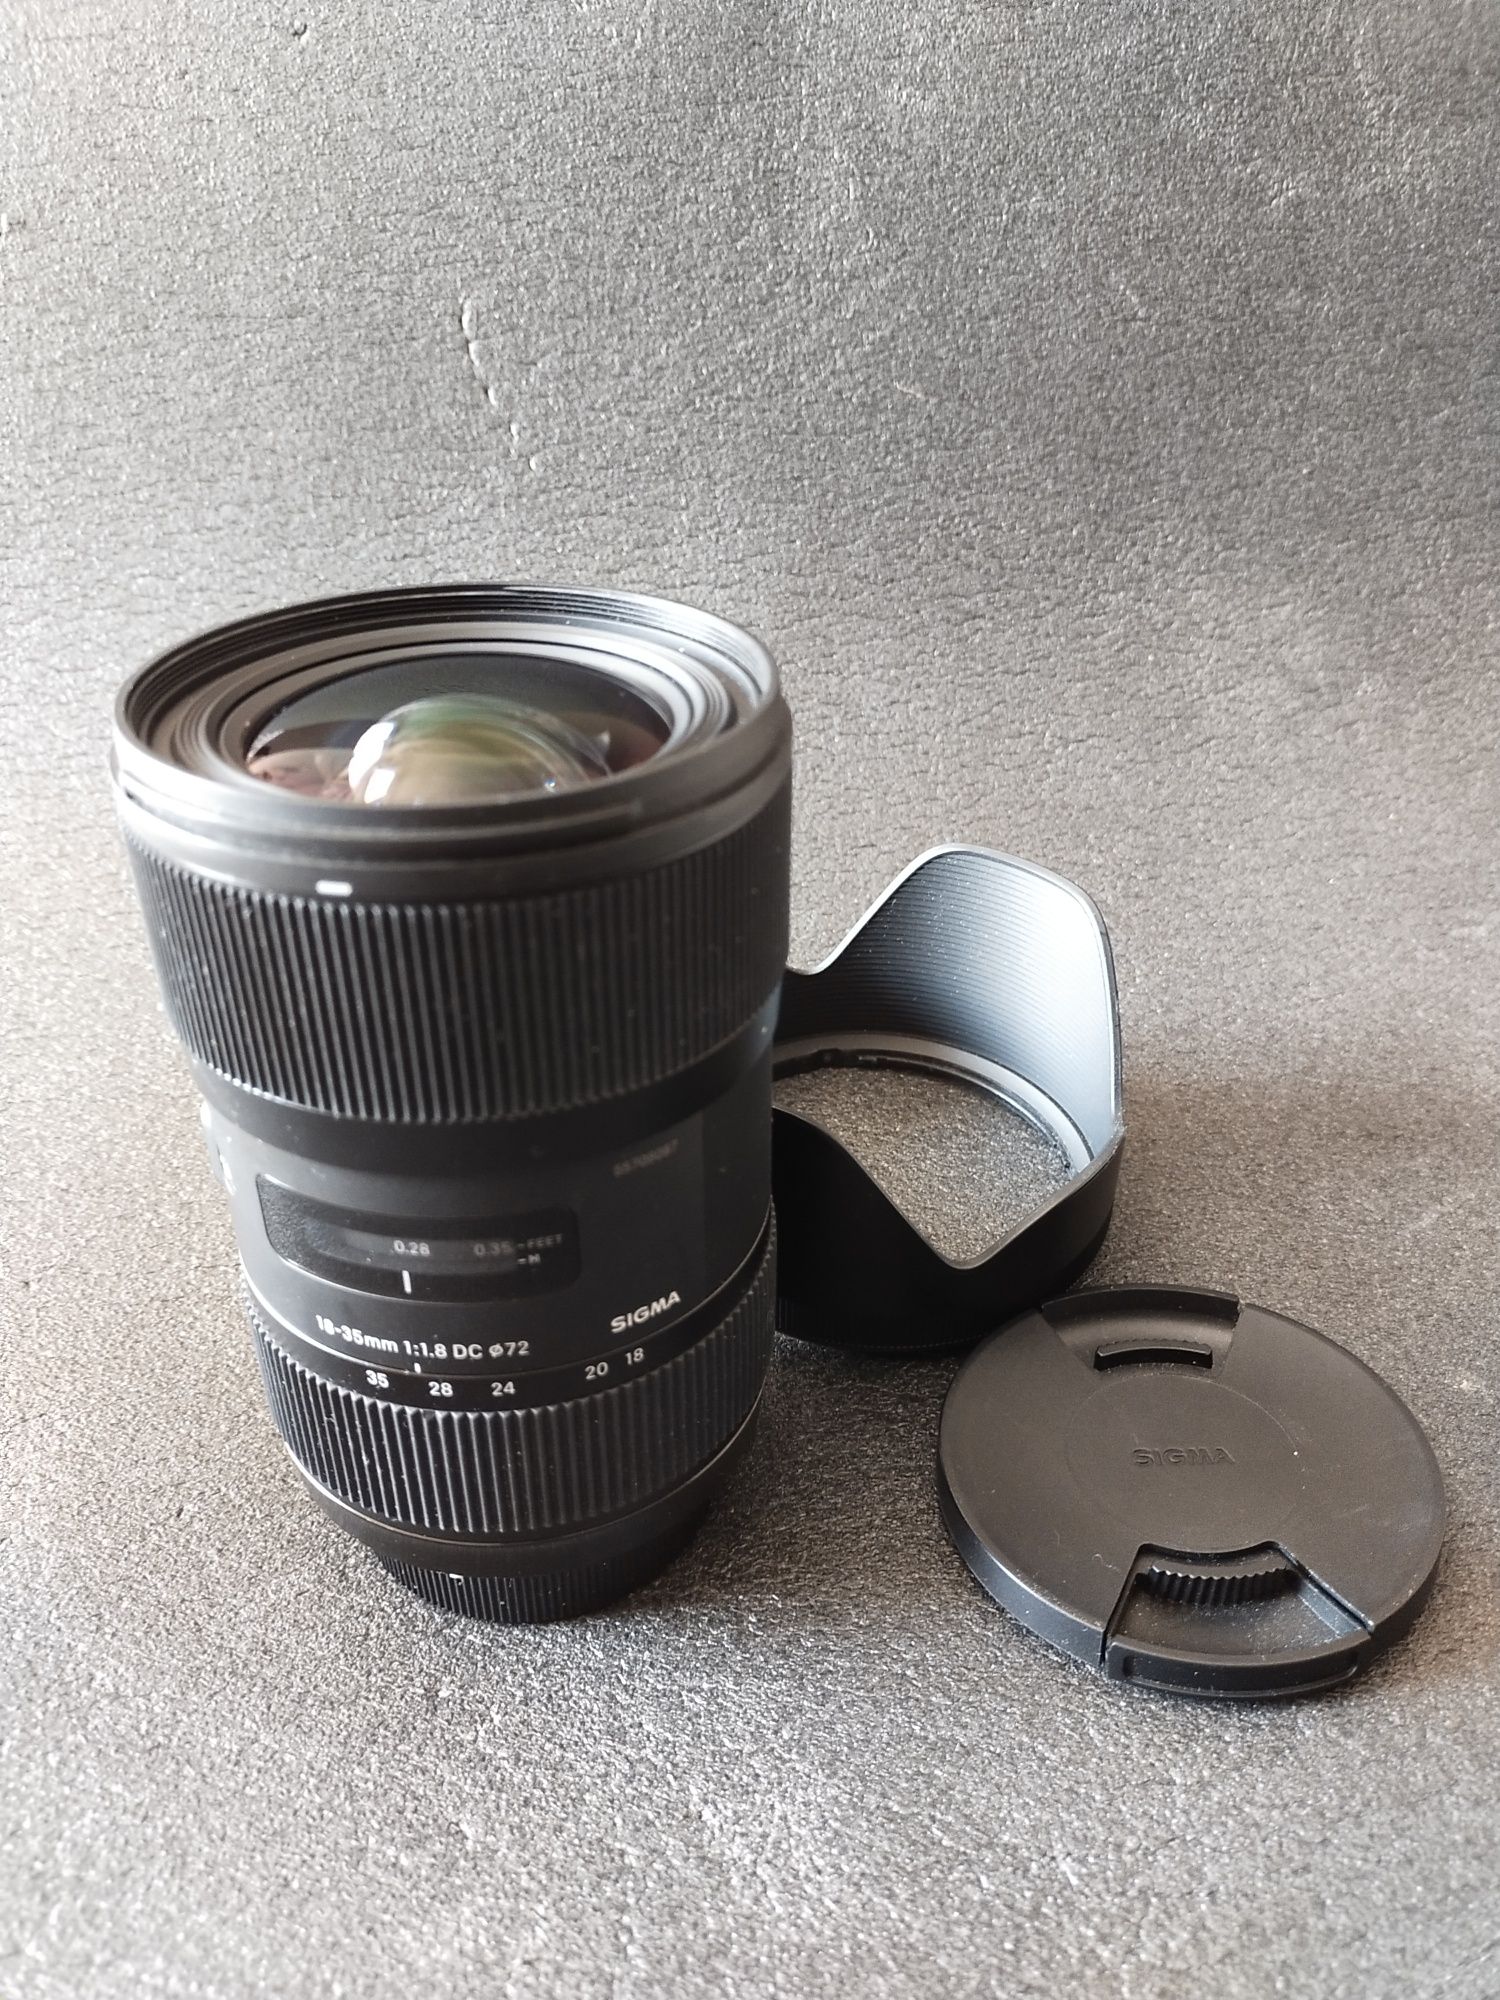 Obiektyw Sigma Art 18-35mm F1.8 do Nikon F, gwarancja